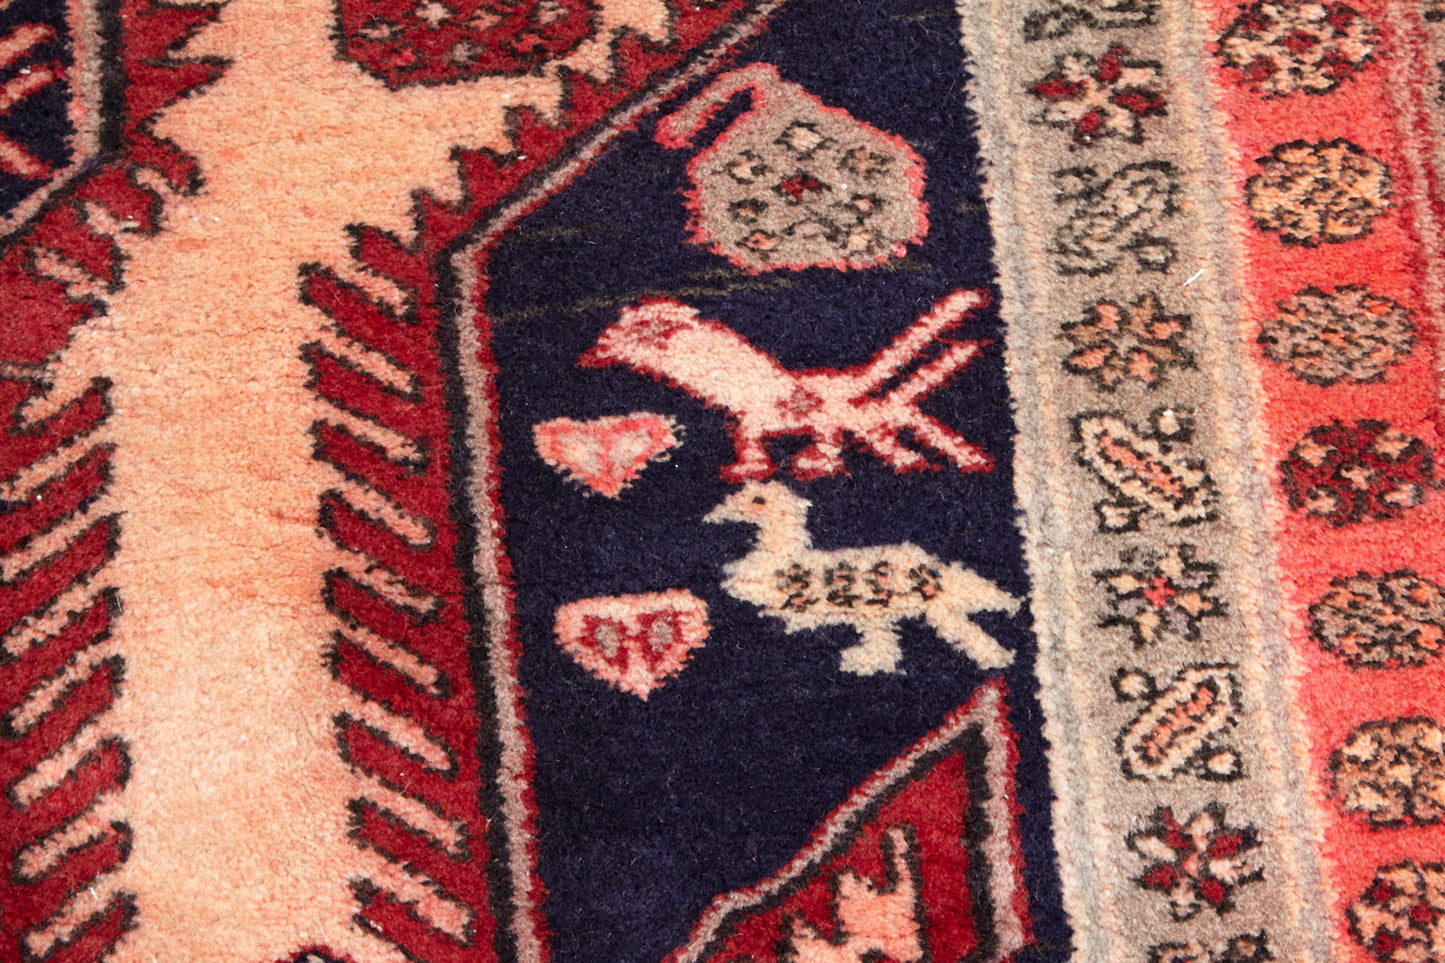 No. 890 Vintage Persian Rug 4' 9" x 12'